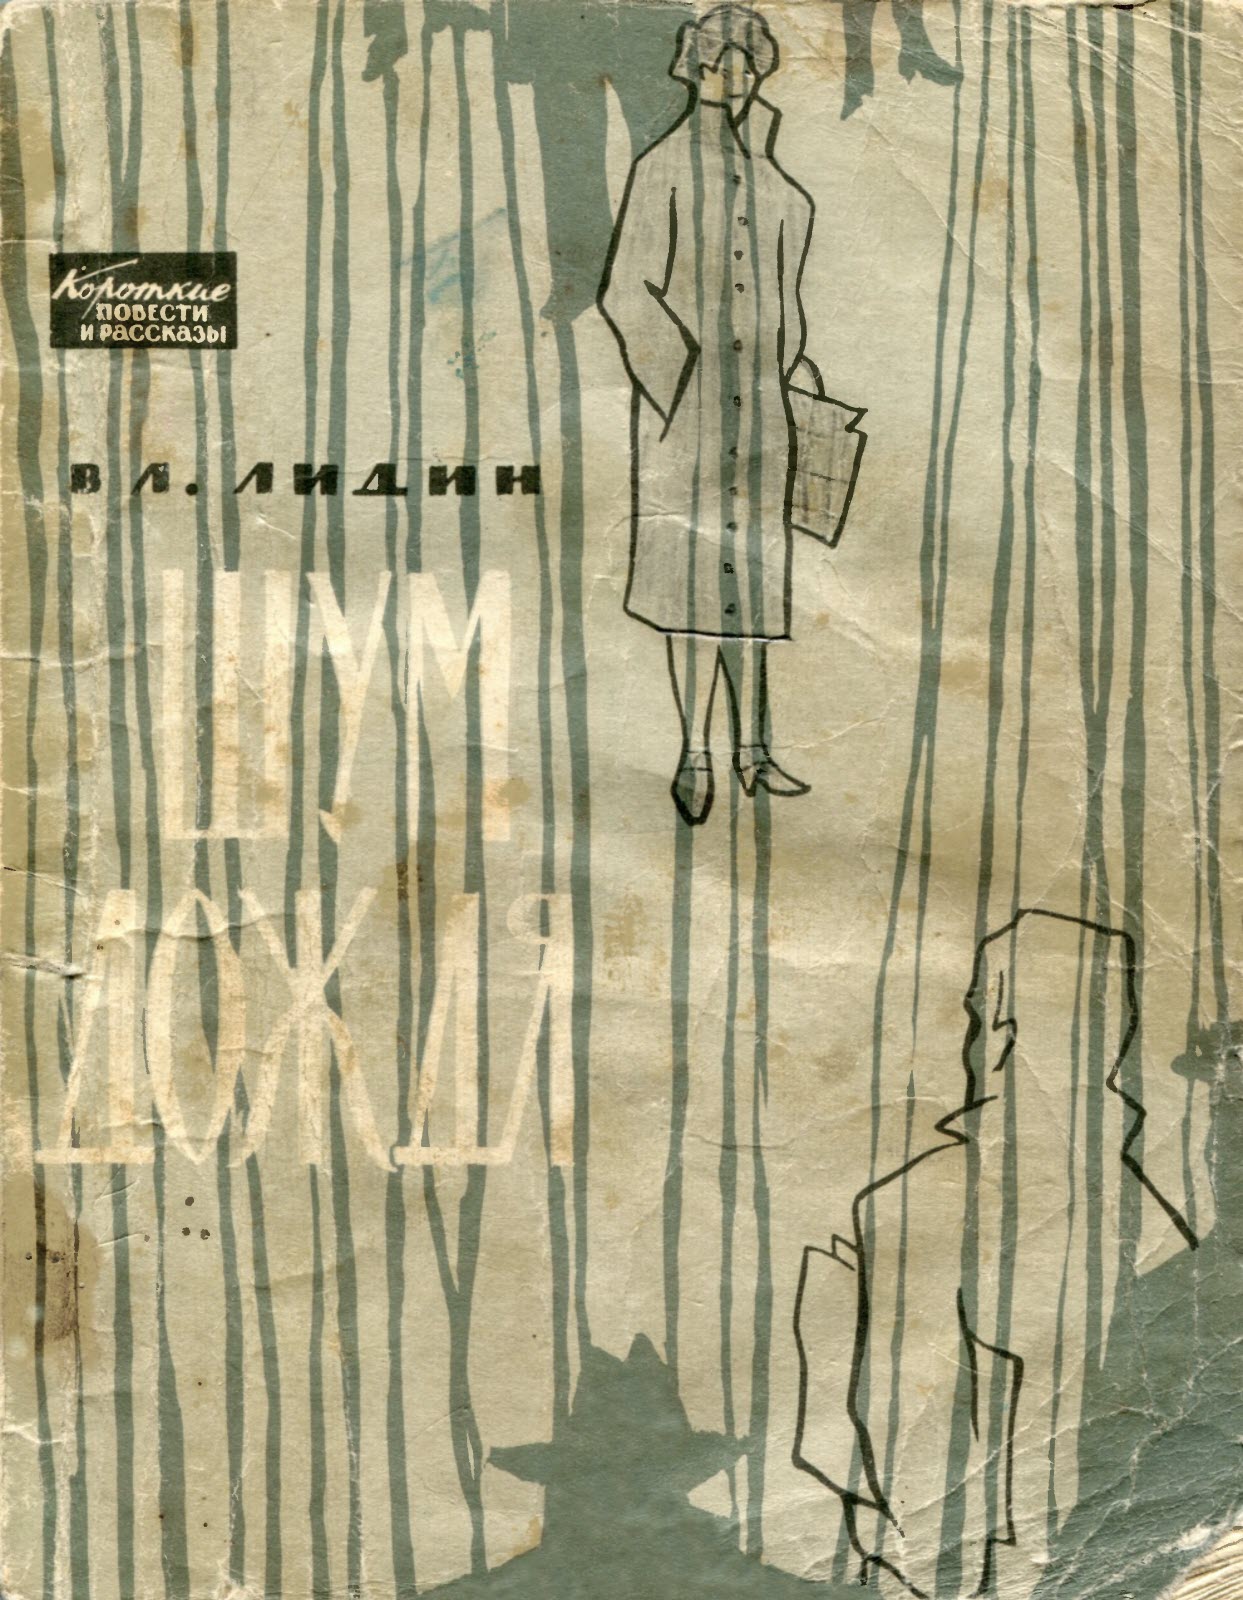 Писатель в лидин говорит. Часовой дождя книга. Иллюстрации книг 1963.